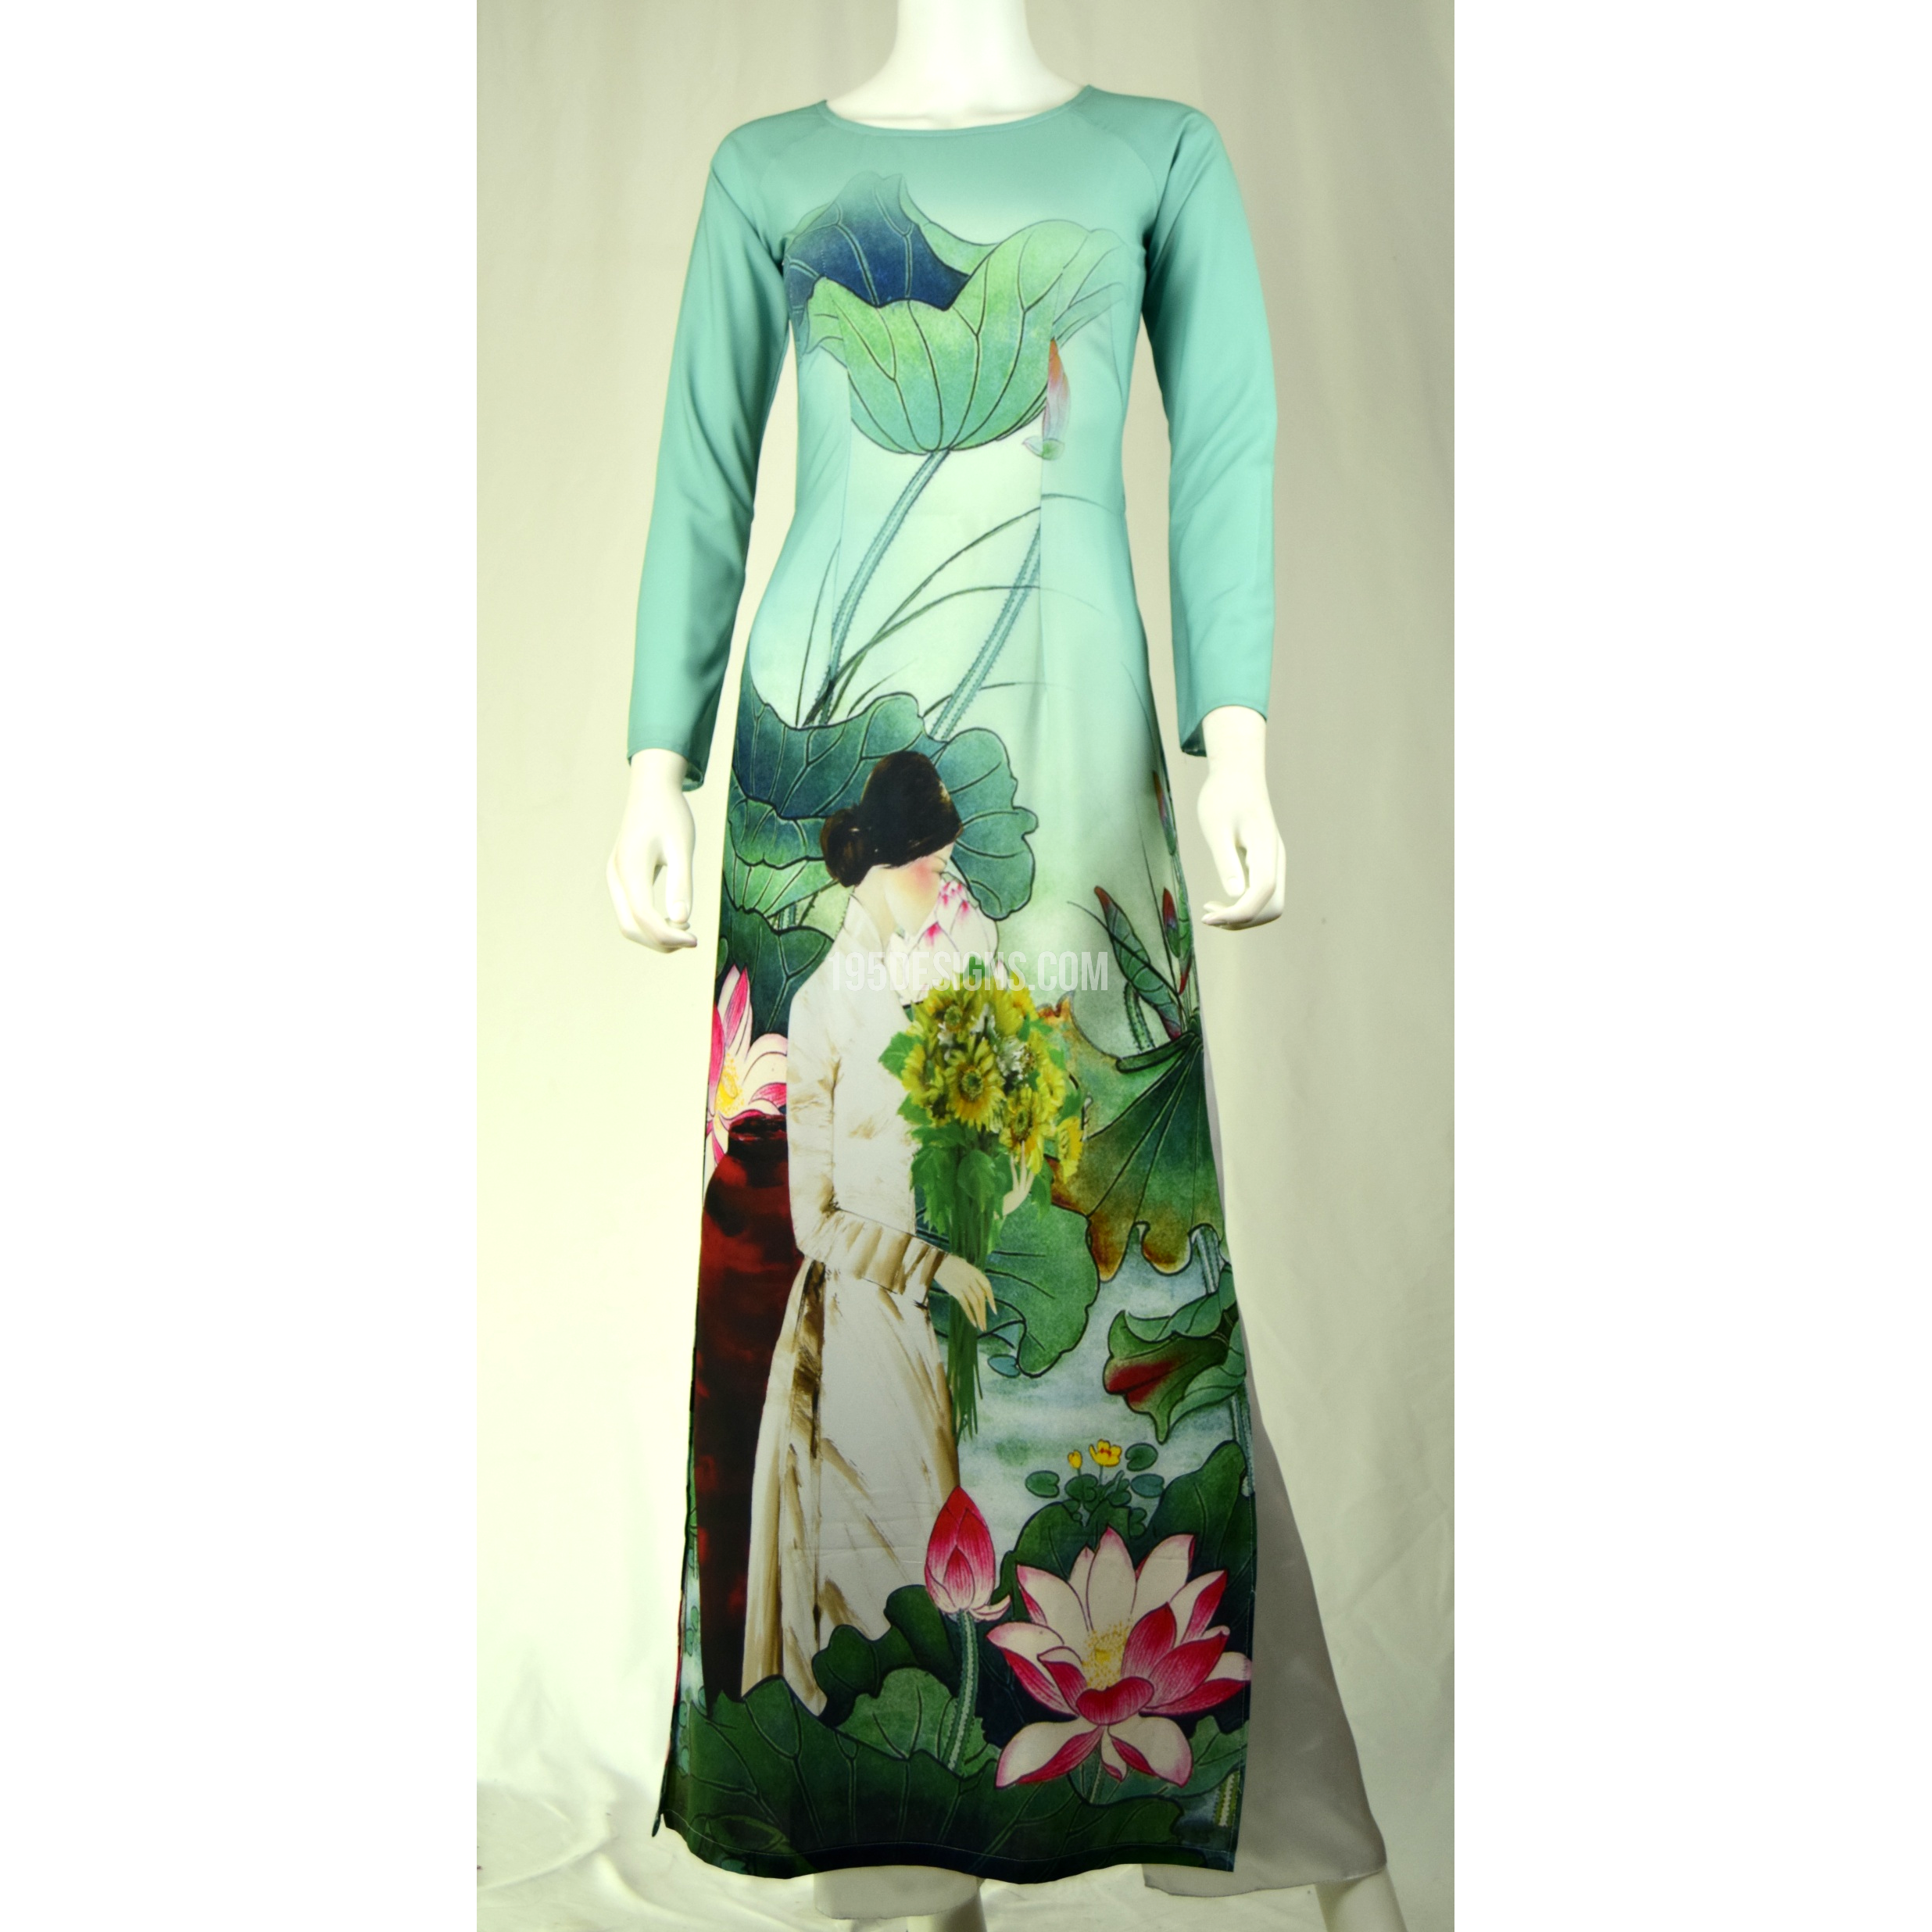 Áo dài sen: Hình ảnh đầy sắc màu và trang nhã, chiếc áo dài sen sẽ giúp bạn khoe được vẻ đẹp của cả truyền thống và hiện đại.